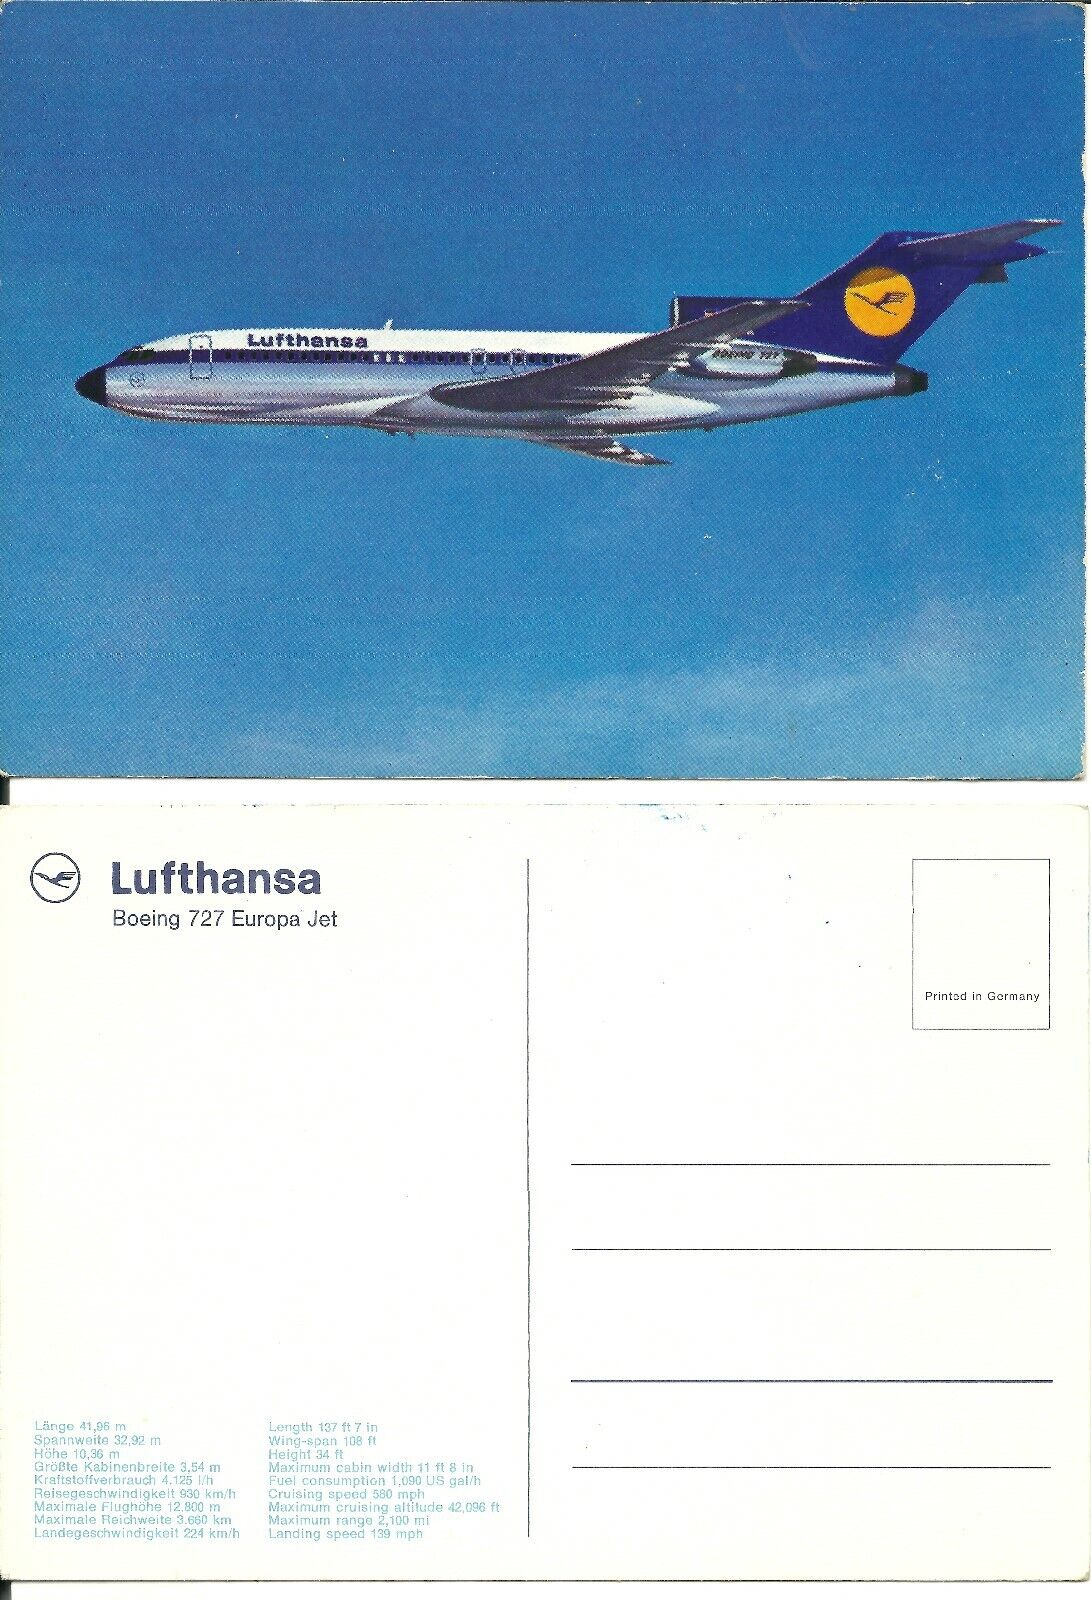 Vintage Airline Issue Postcard Lufthansa  B 727 Europa Jet